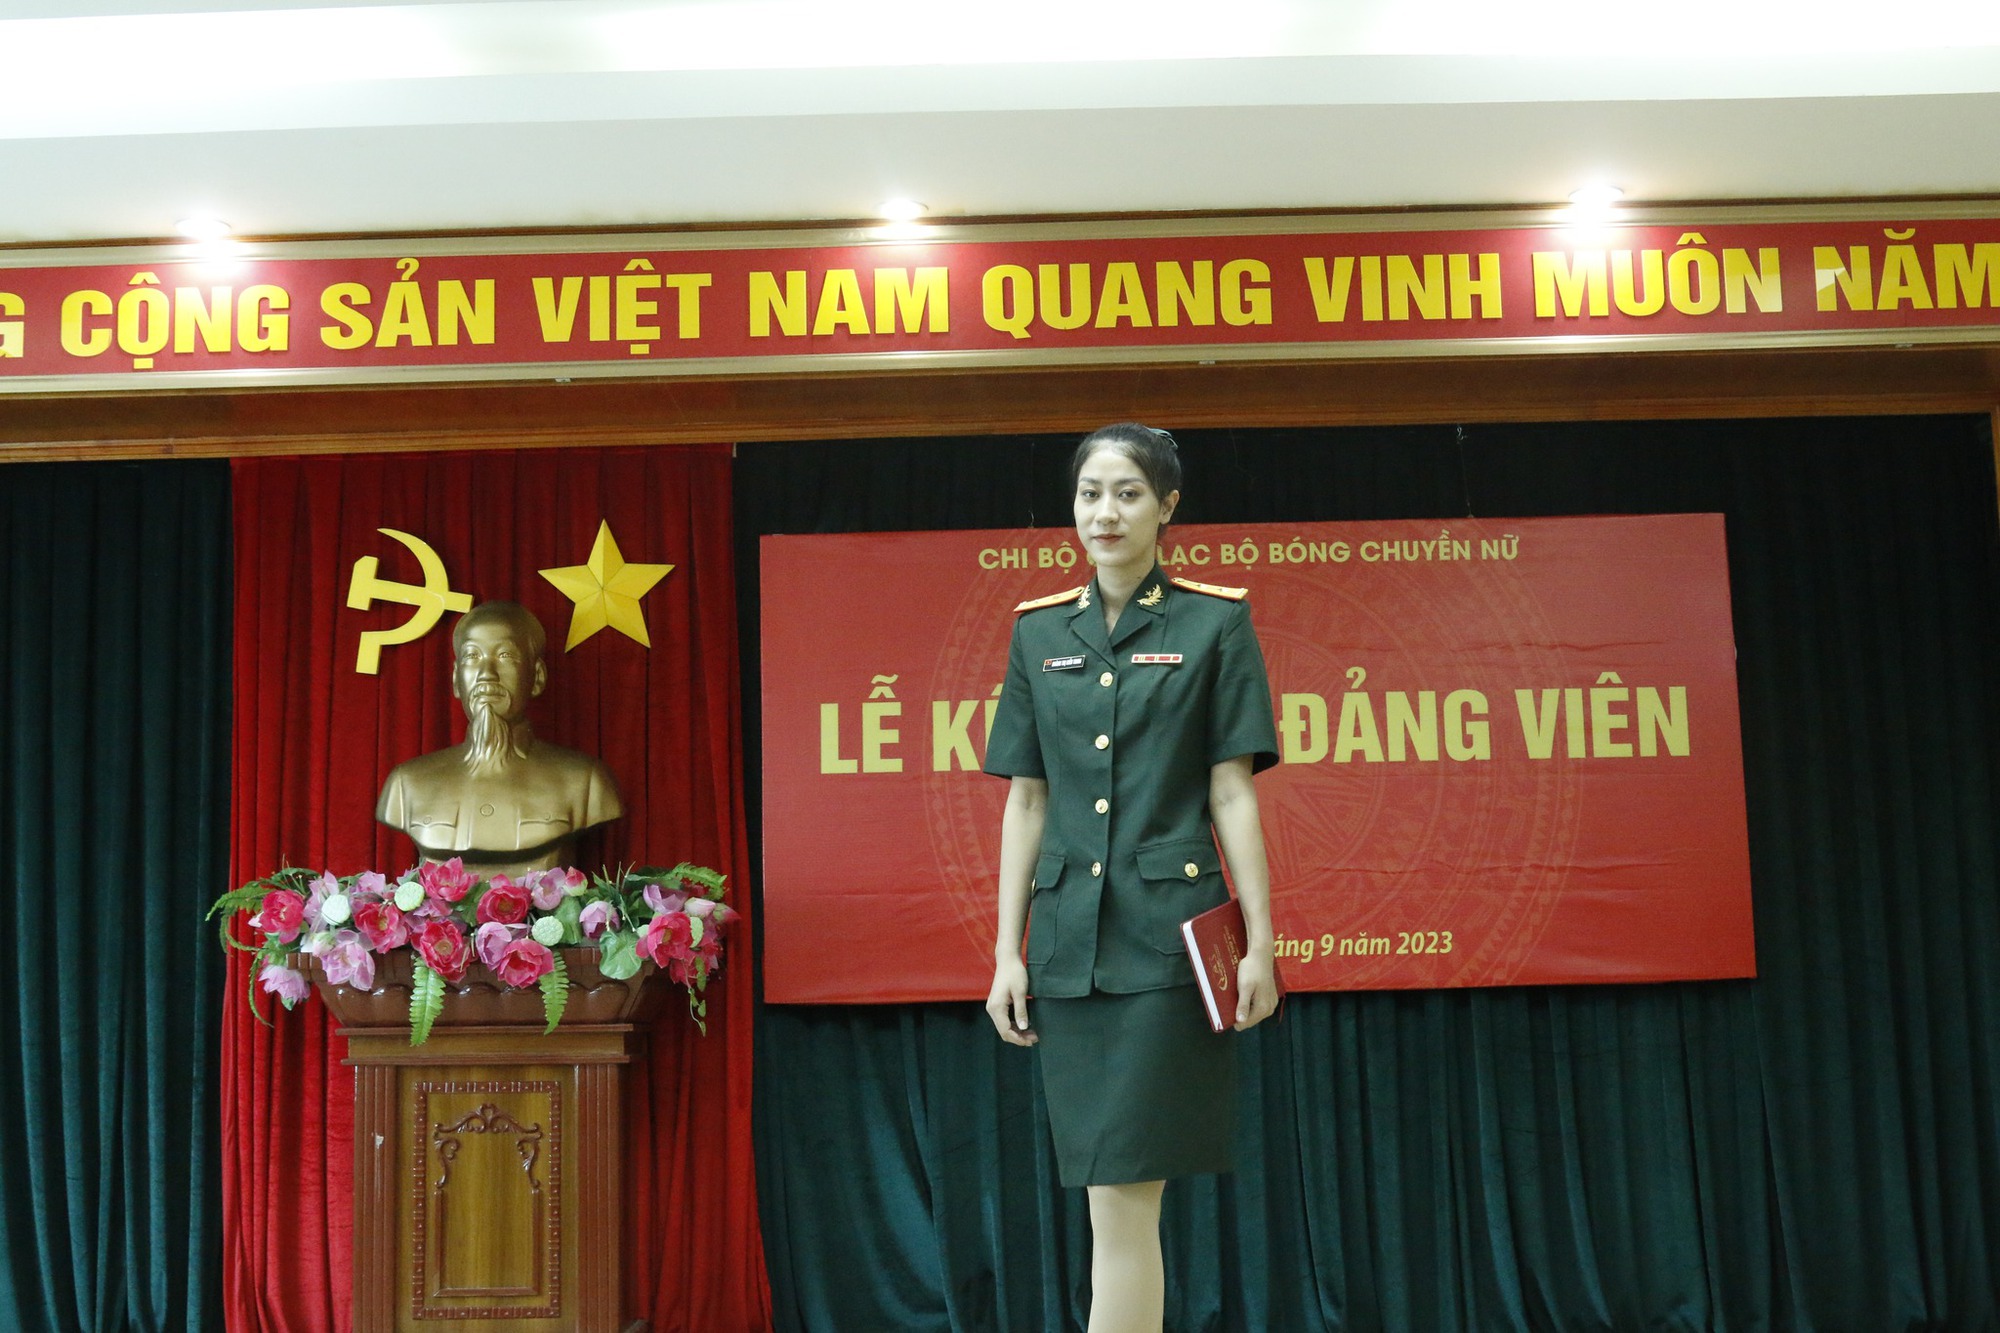 Nhan sắc hoa khôi bóng chuyền vừa nhận vinh dự lớn sau khi cùng Việt Nam làm nên lịch sử - Ảnh 5.